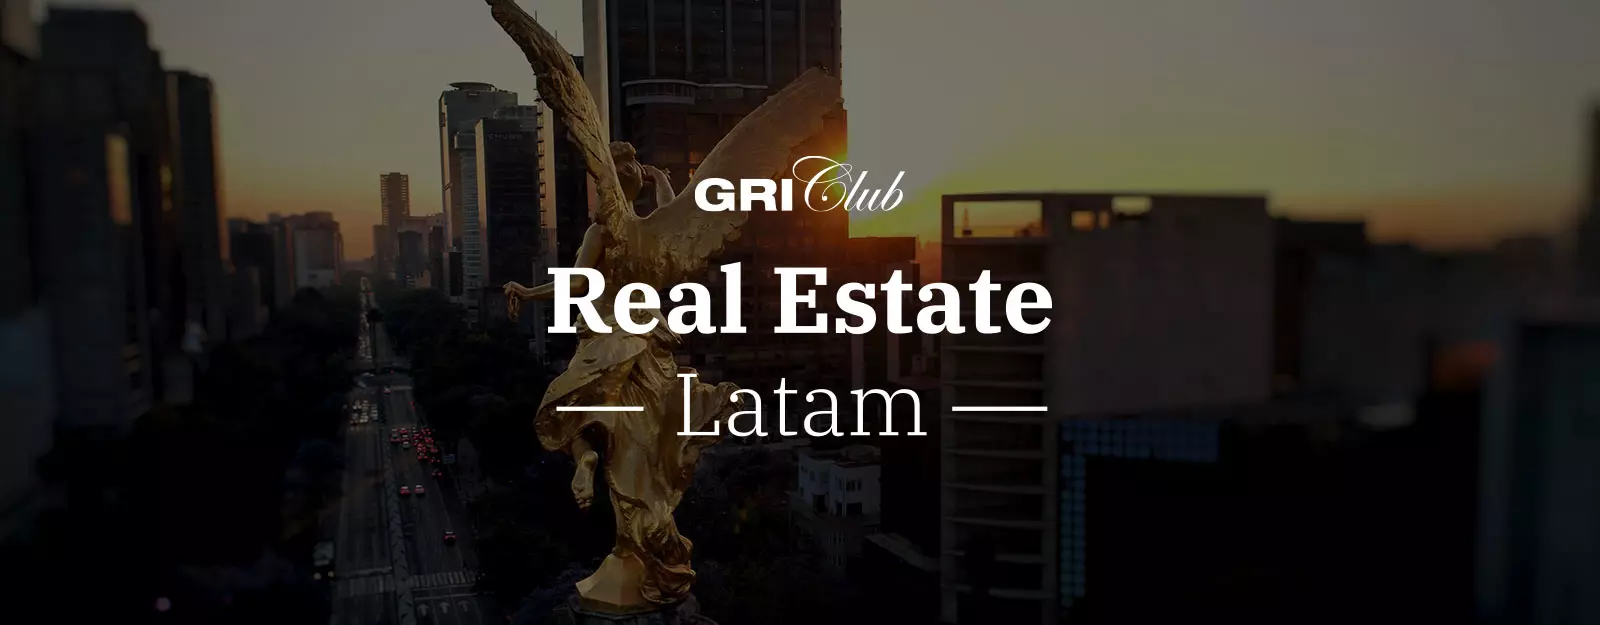 Club Real Estate Latam 